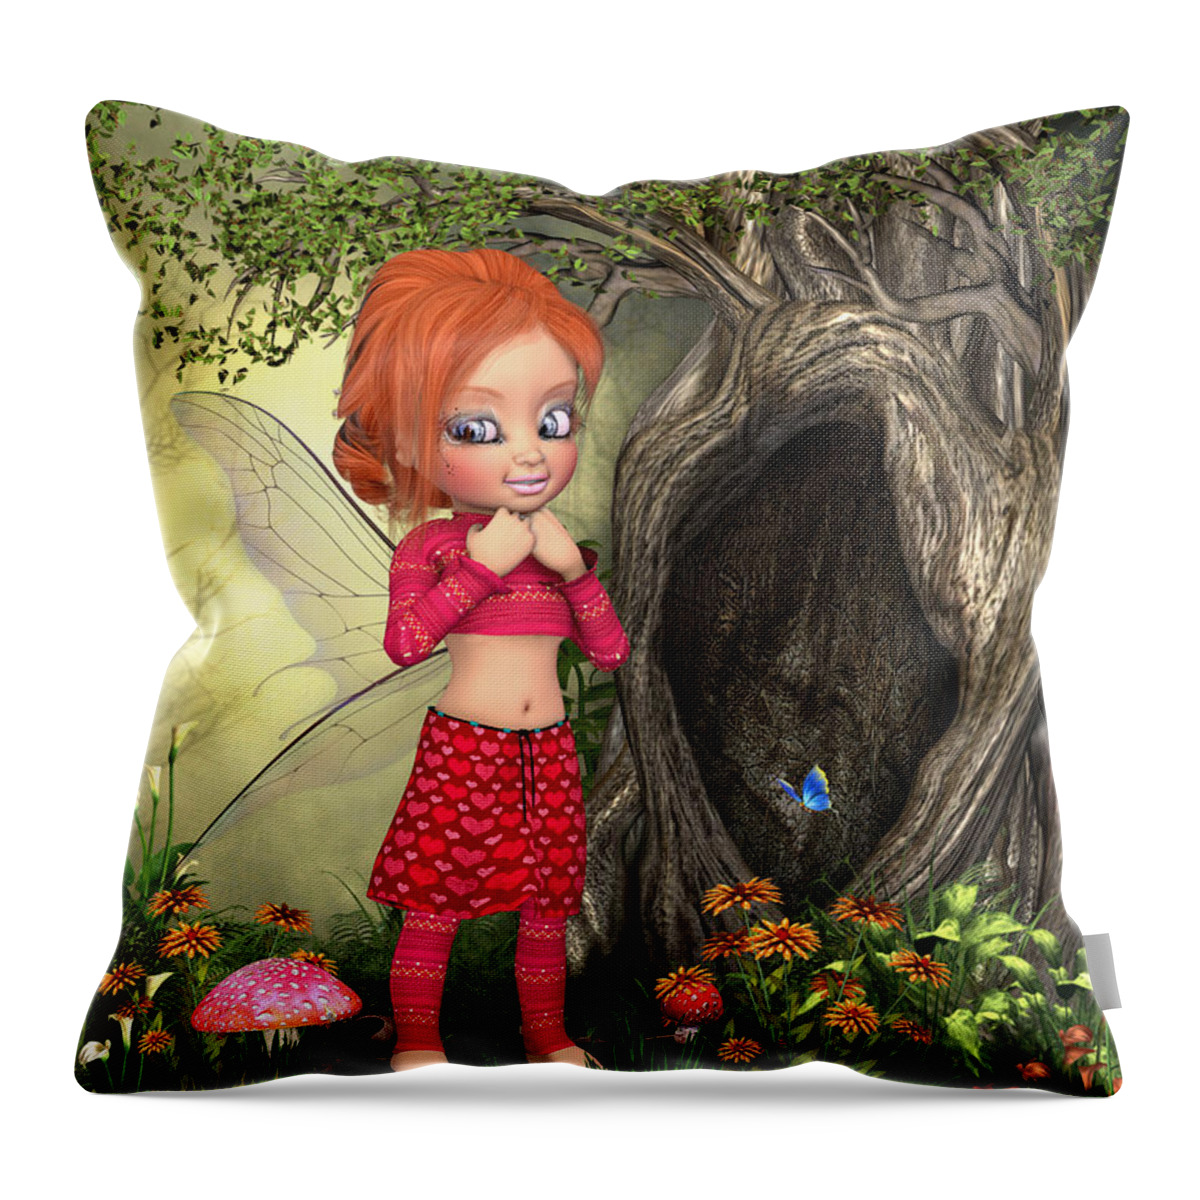 Fairy Woods Throw Pillow featuring the digital art Fairy woods by John Junek